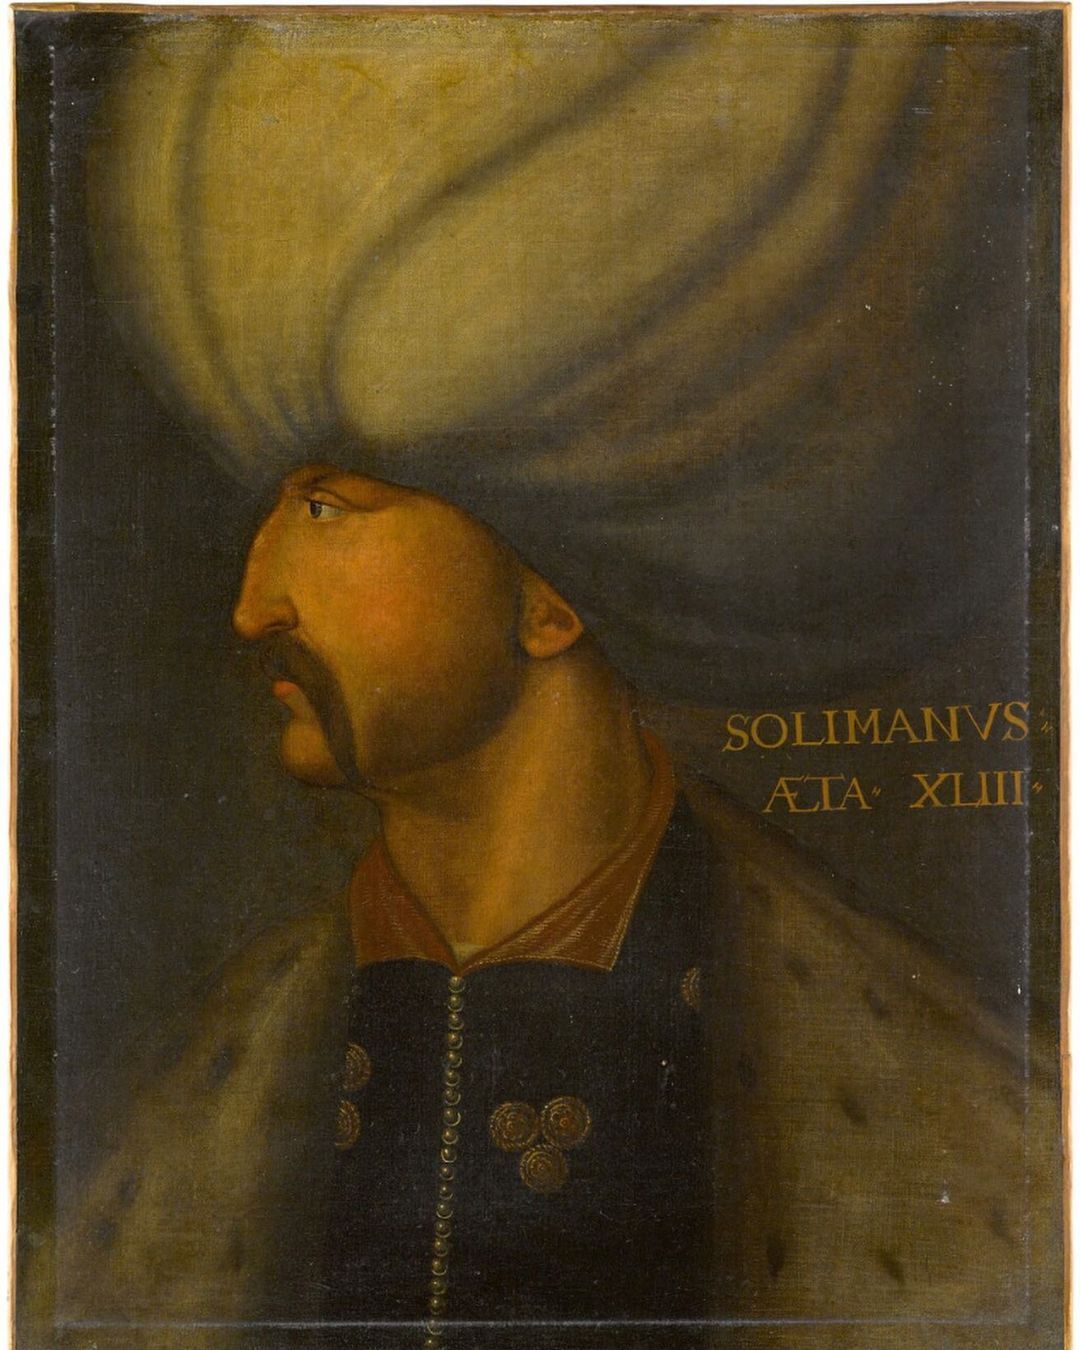 Osmanlı padişahlarının resmedildiği 6 tablo, açık arttırmaya çıkartıldı - Sayfa:1